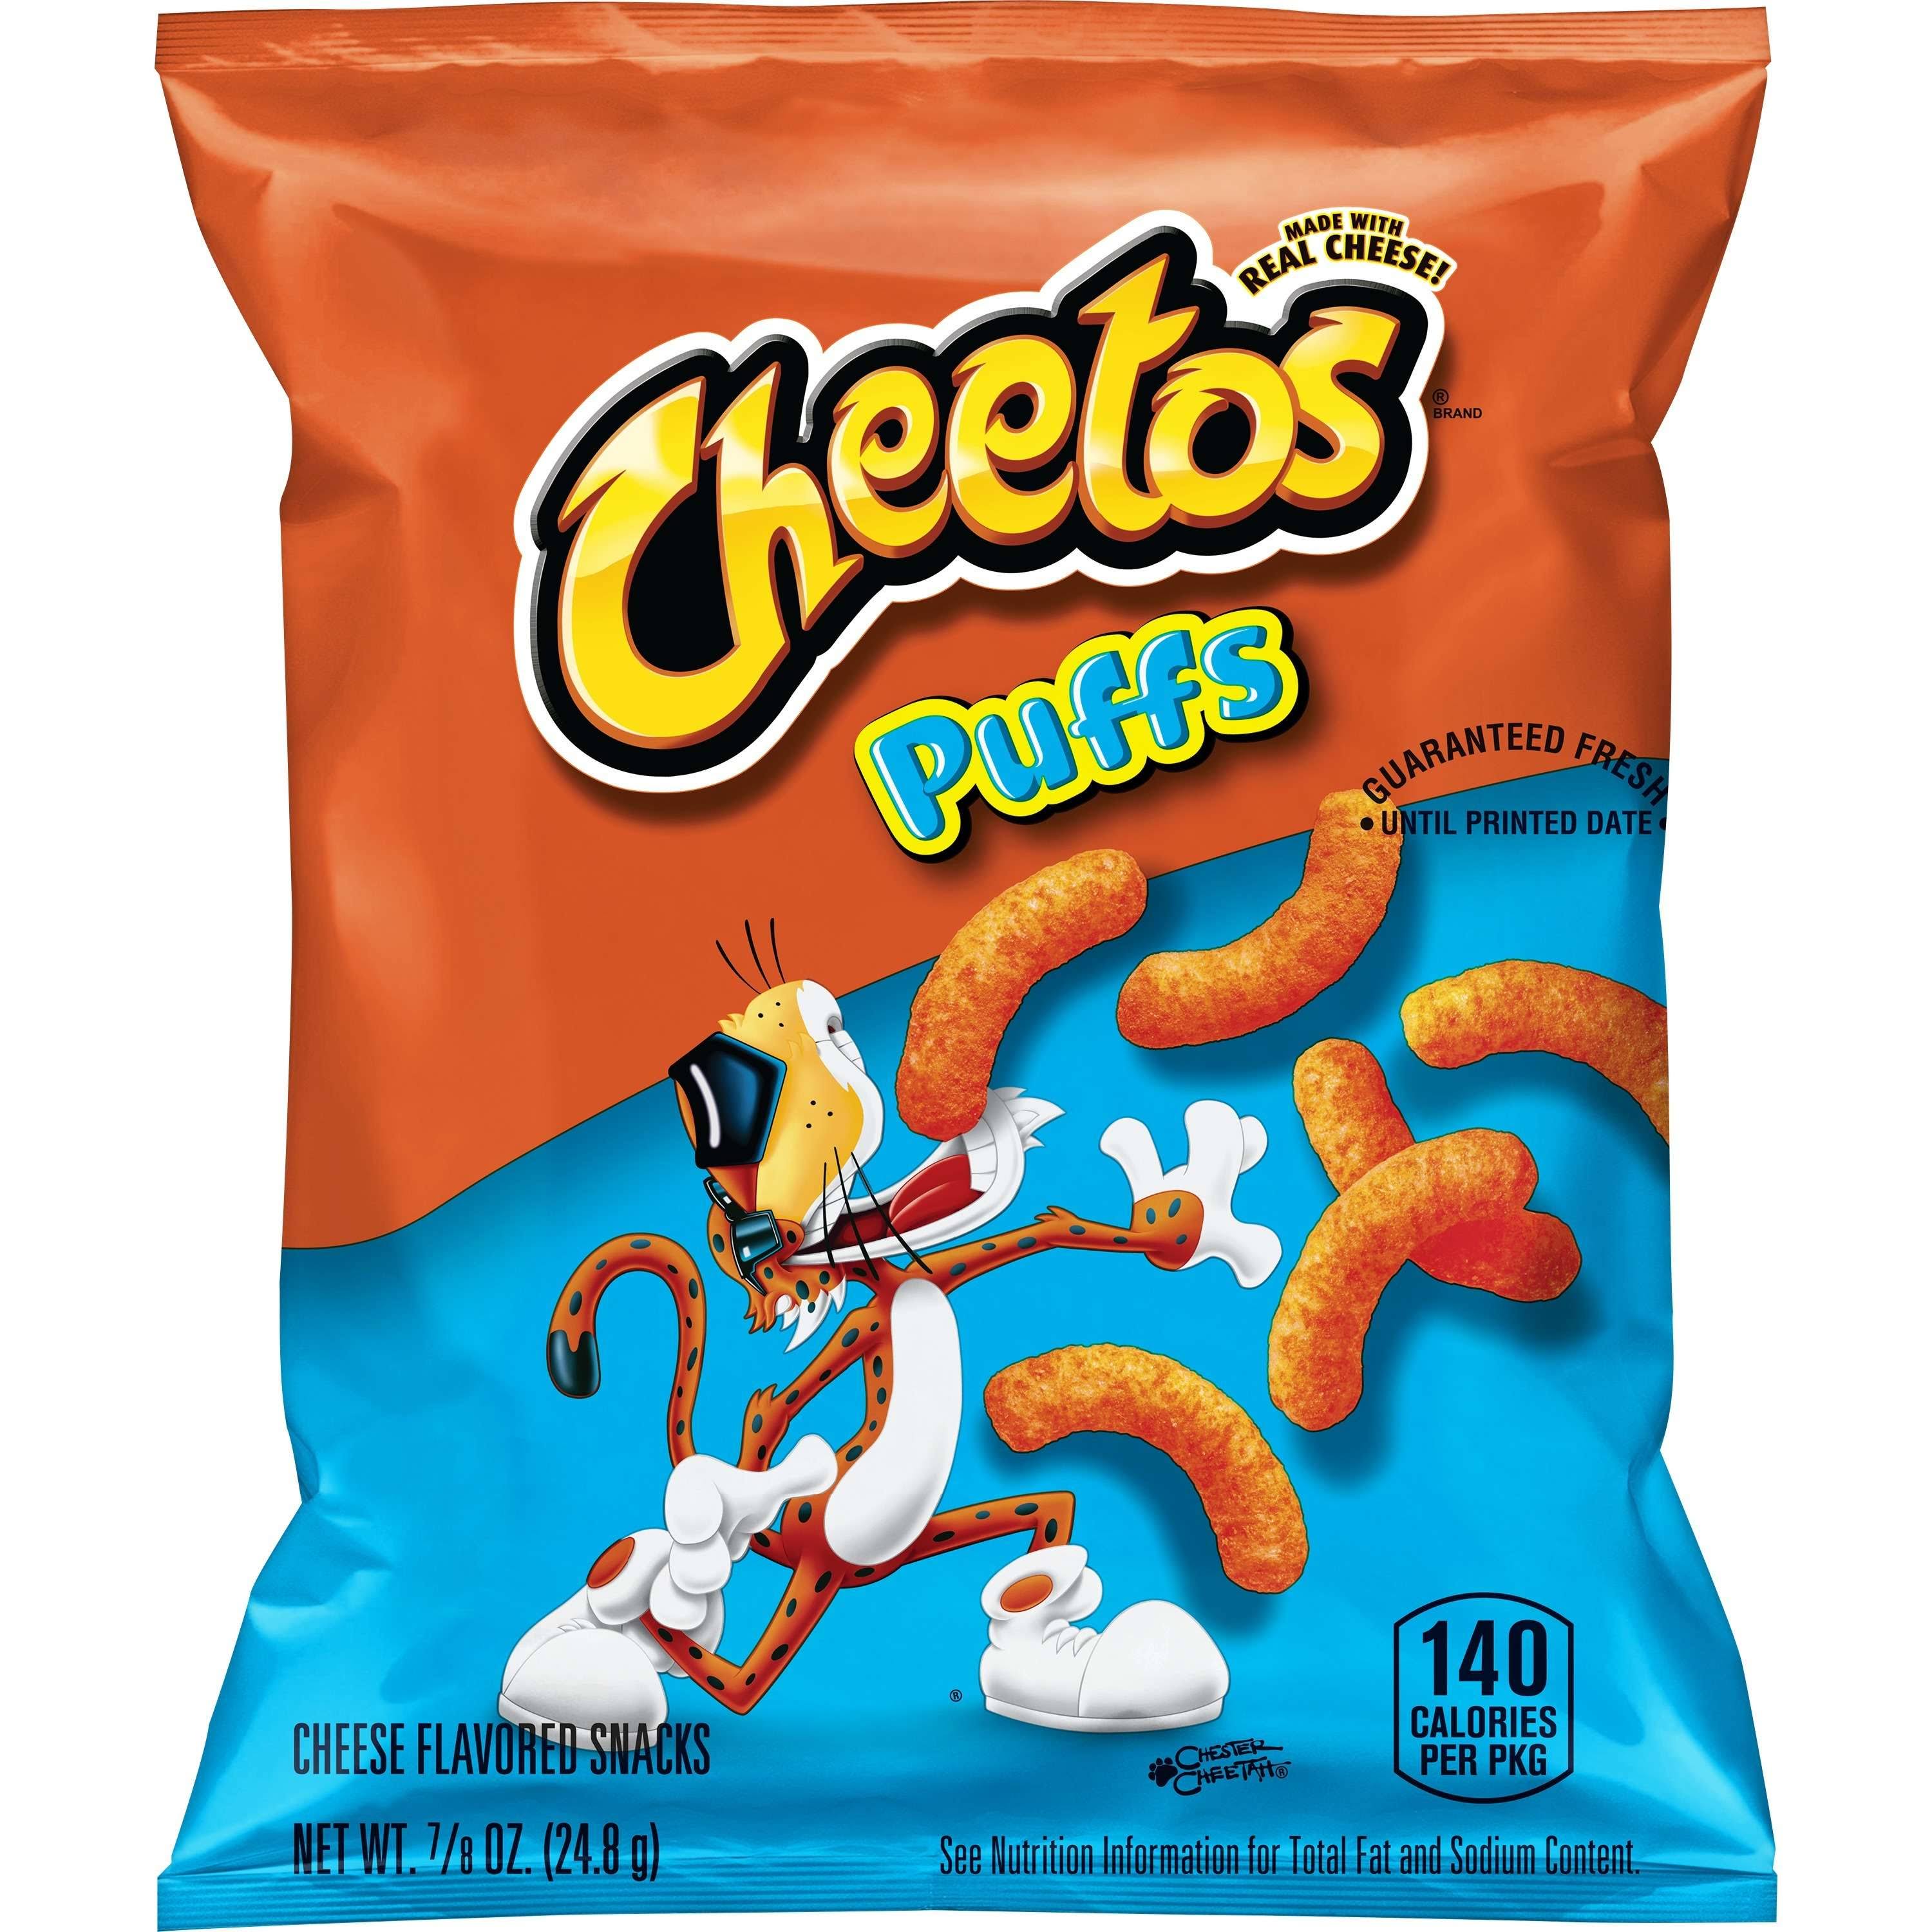 Frito-Lay Cheetos Snacks Baked Puffs - Cheese